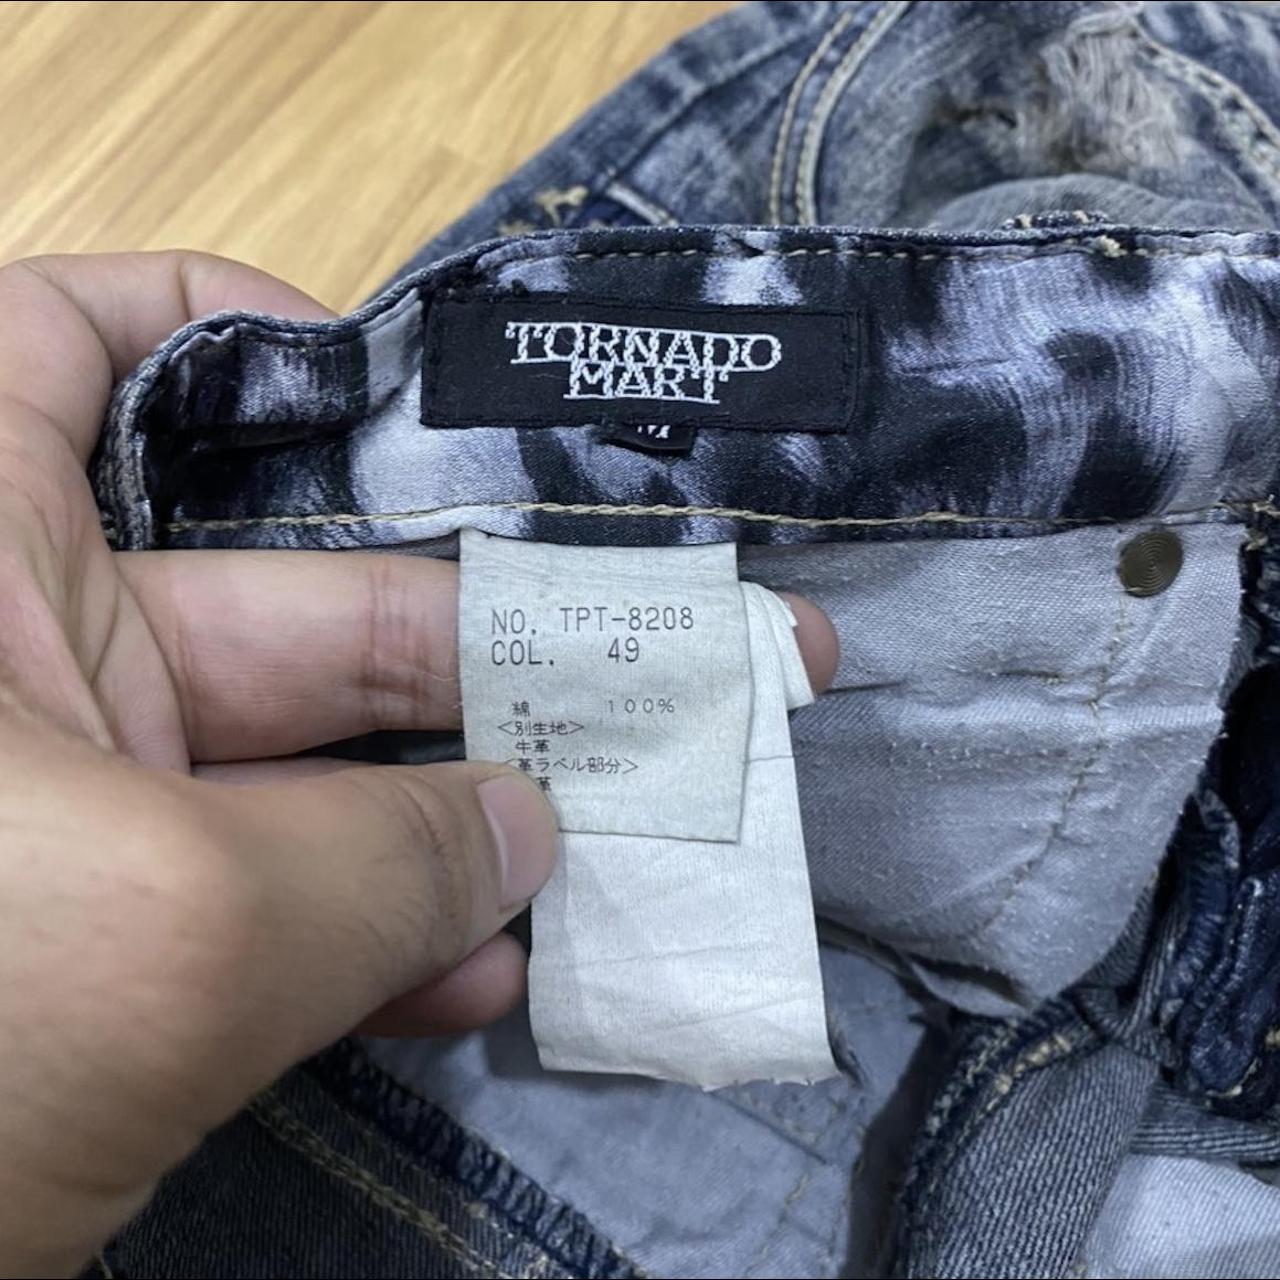 Tornadomart archive flared cargo jeans (dm me for... - Depop